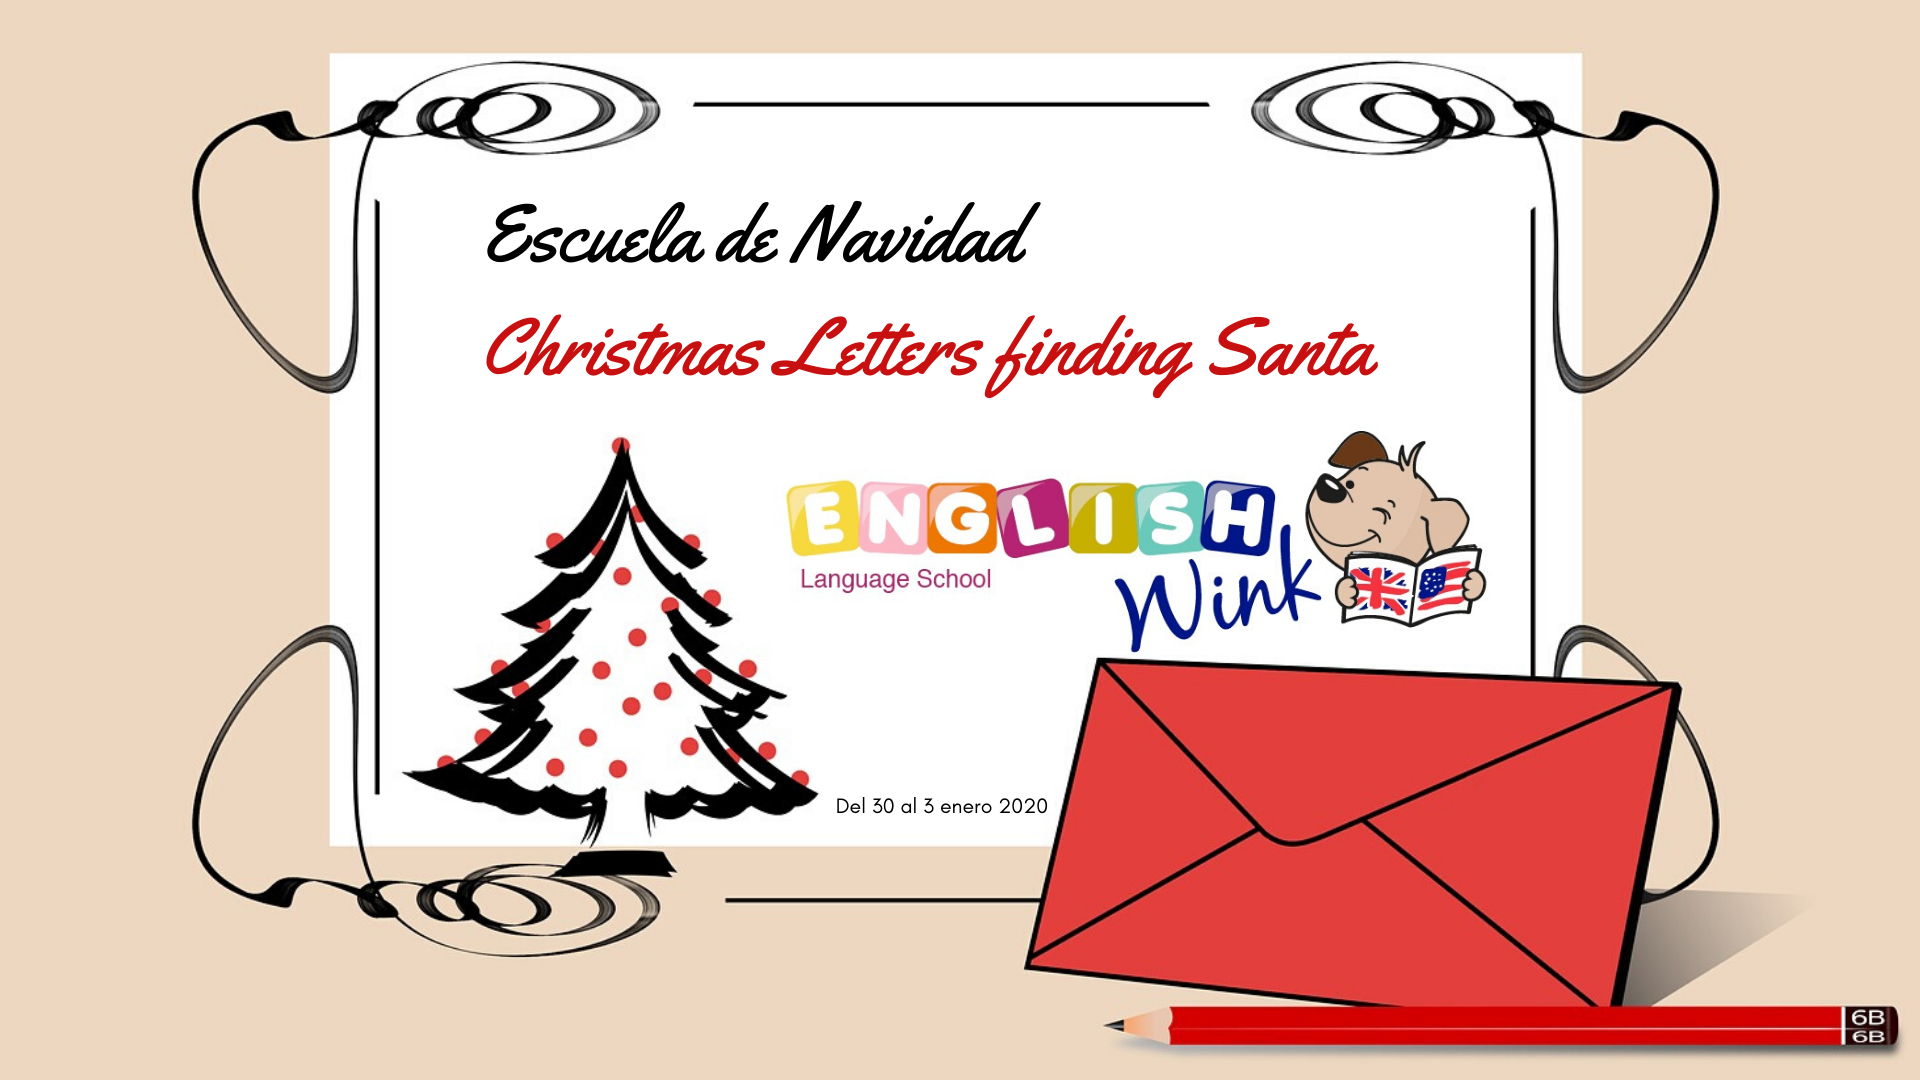 Escuela de Navidad Christmas Letters finding Santa